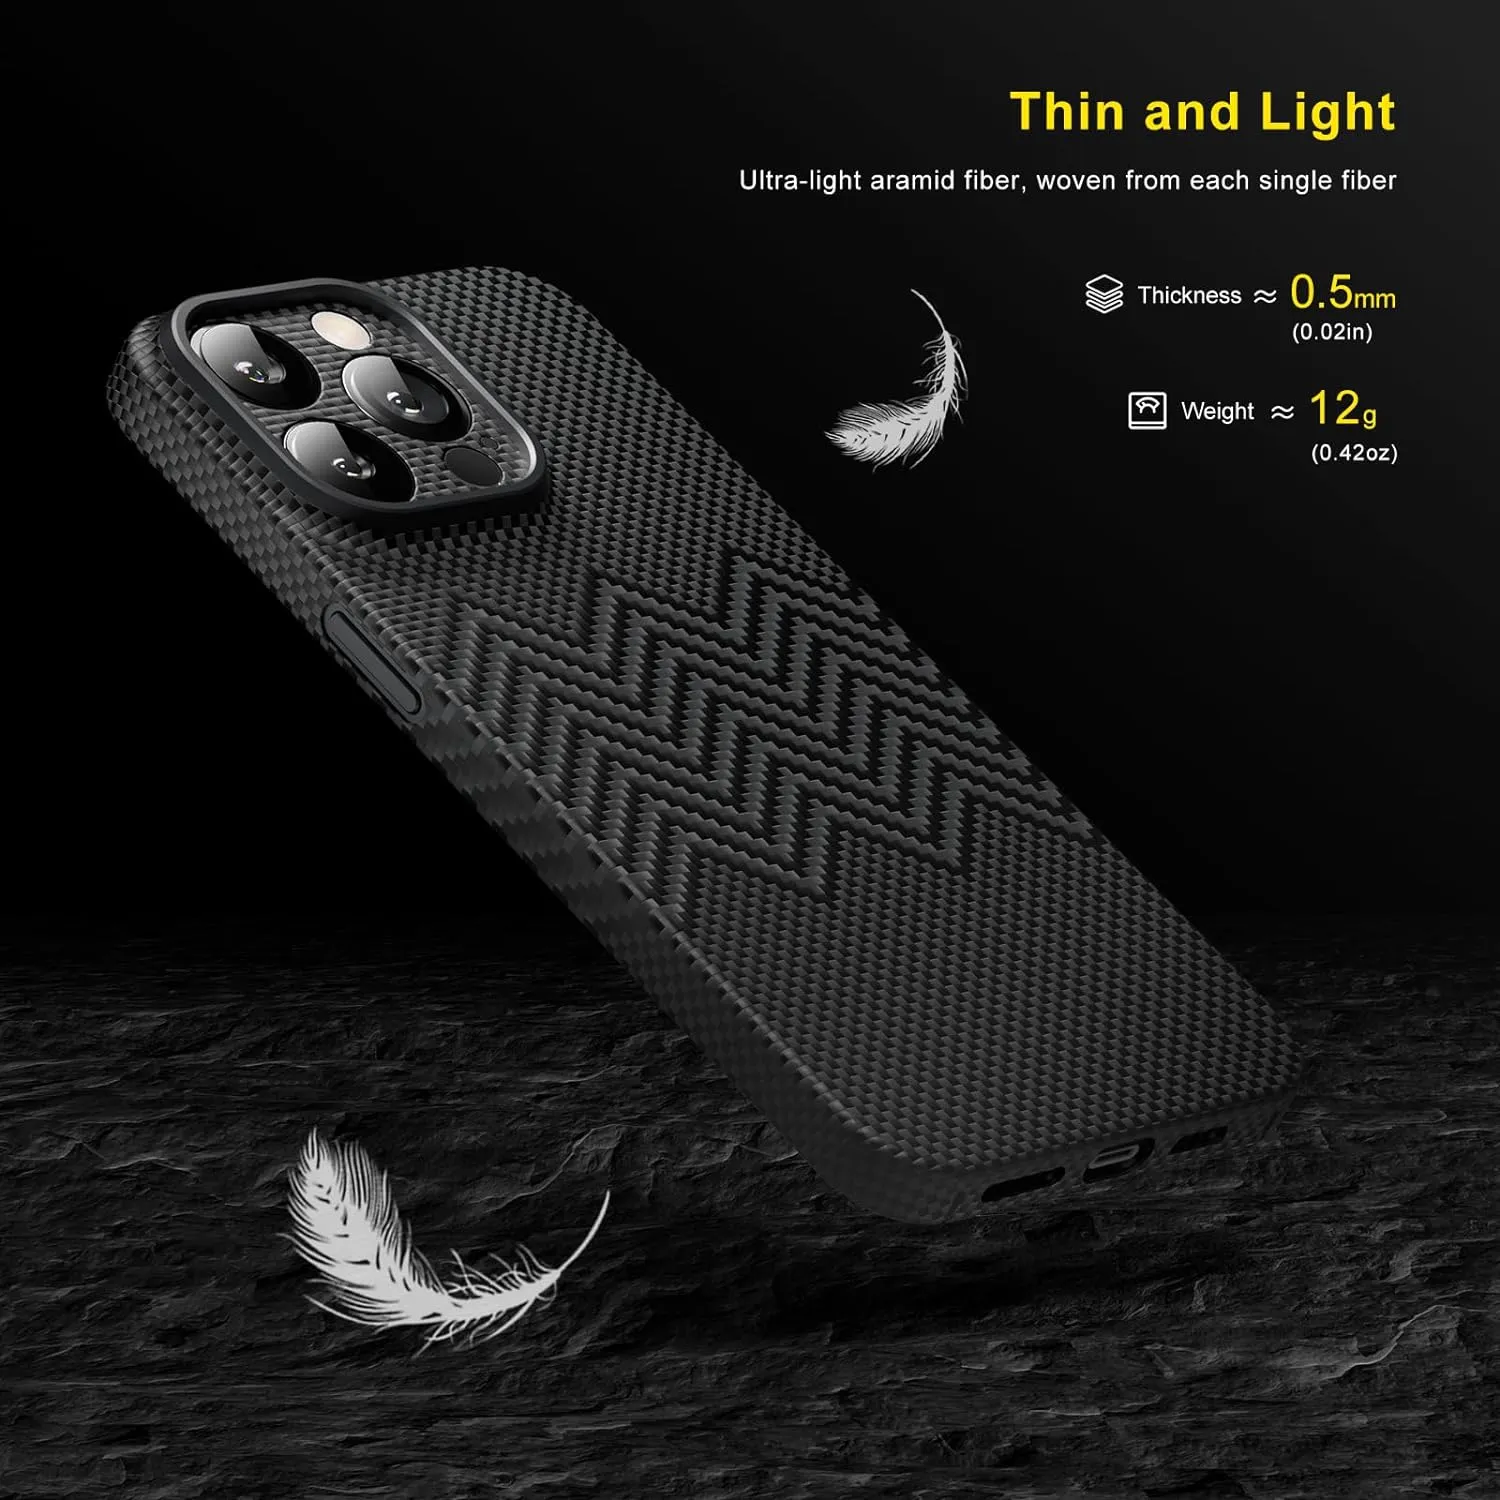 Memumi Aramid Fiber 3D Texture Scratch Resistant Case For Iphone 15 Pro Max - 1500D